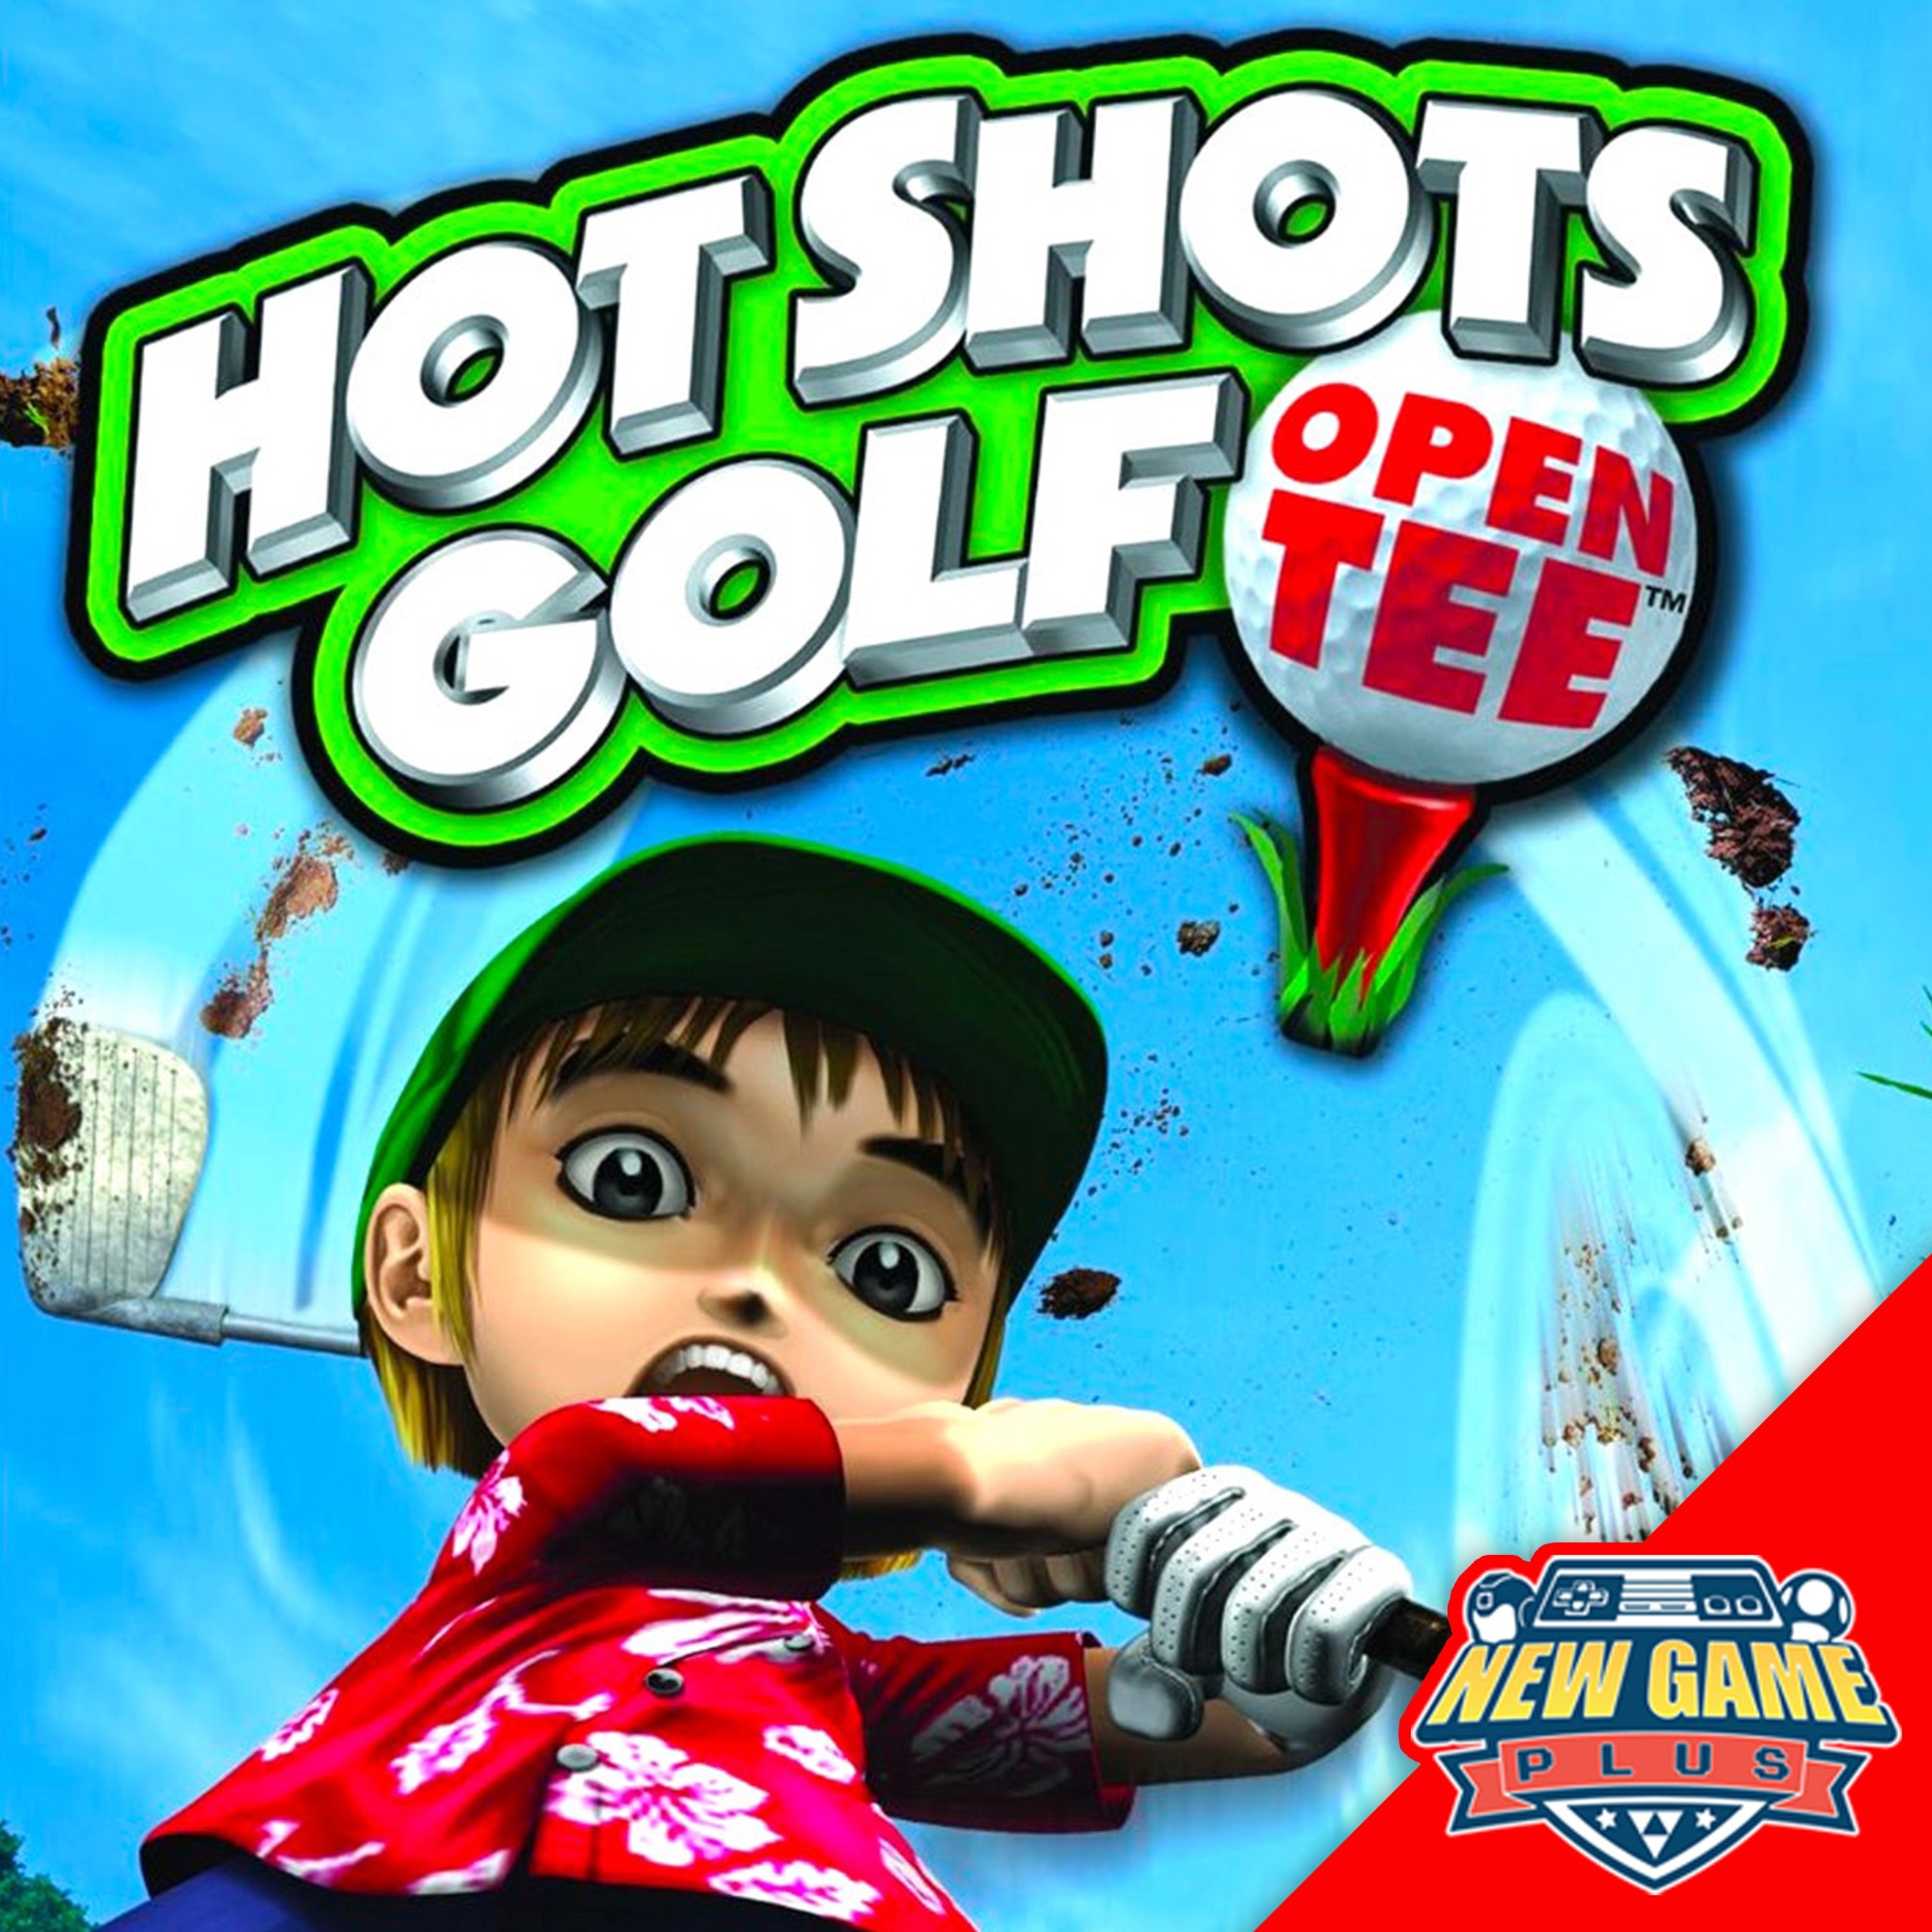 Episode 429: Hot Shots Golf: Open Tee